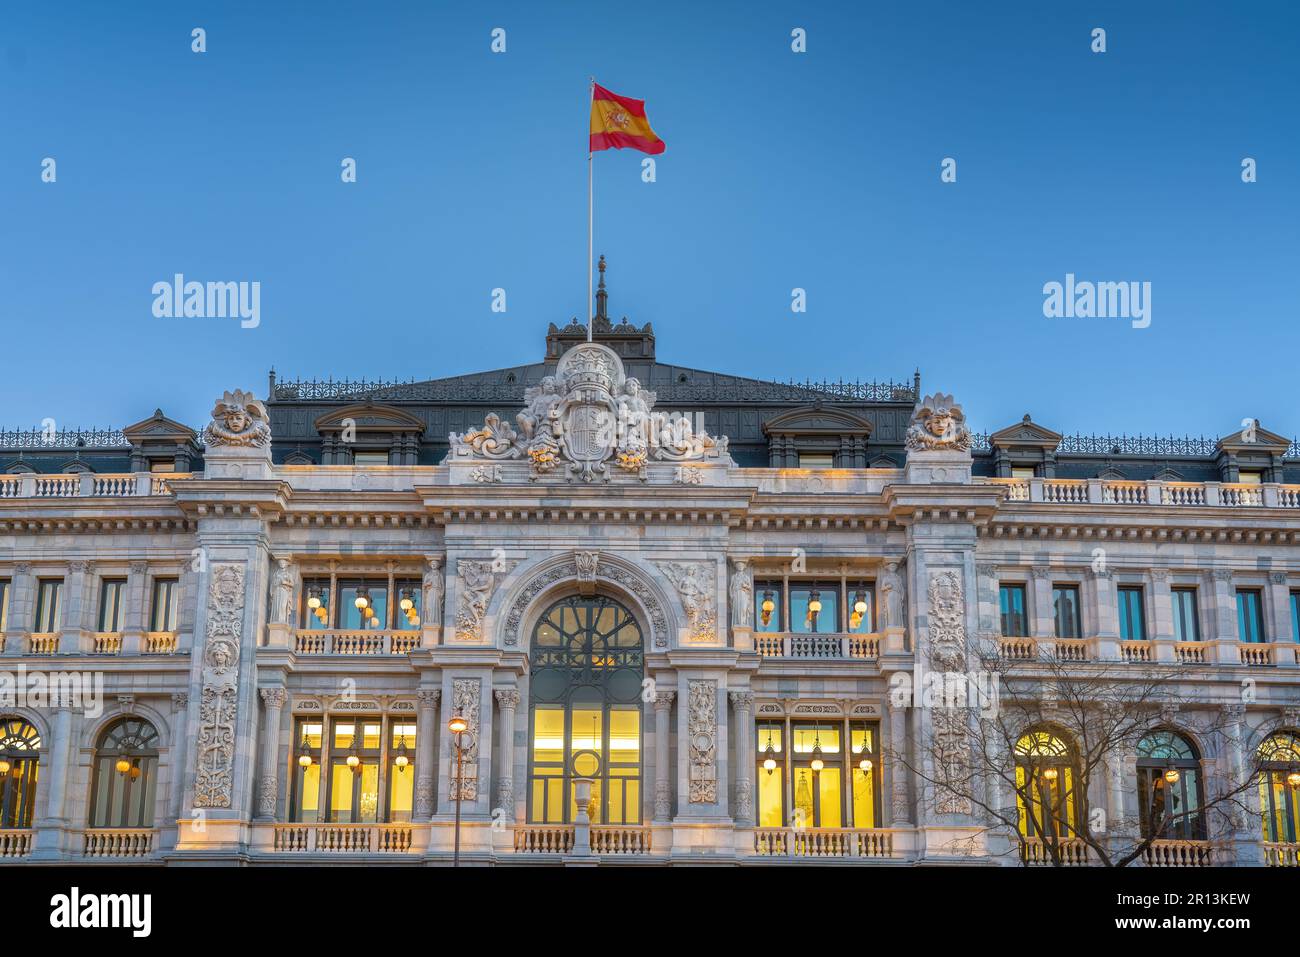 Banque d'Espagne (Banco de España) - Banque centrale d'Espagne - Madrid, Espagne Banque D'Images